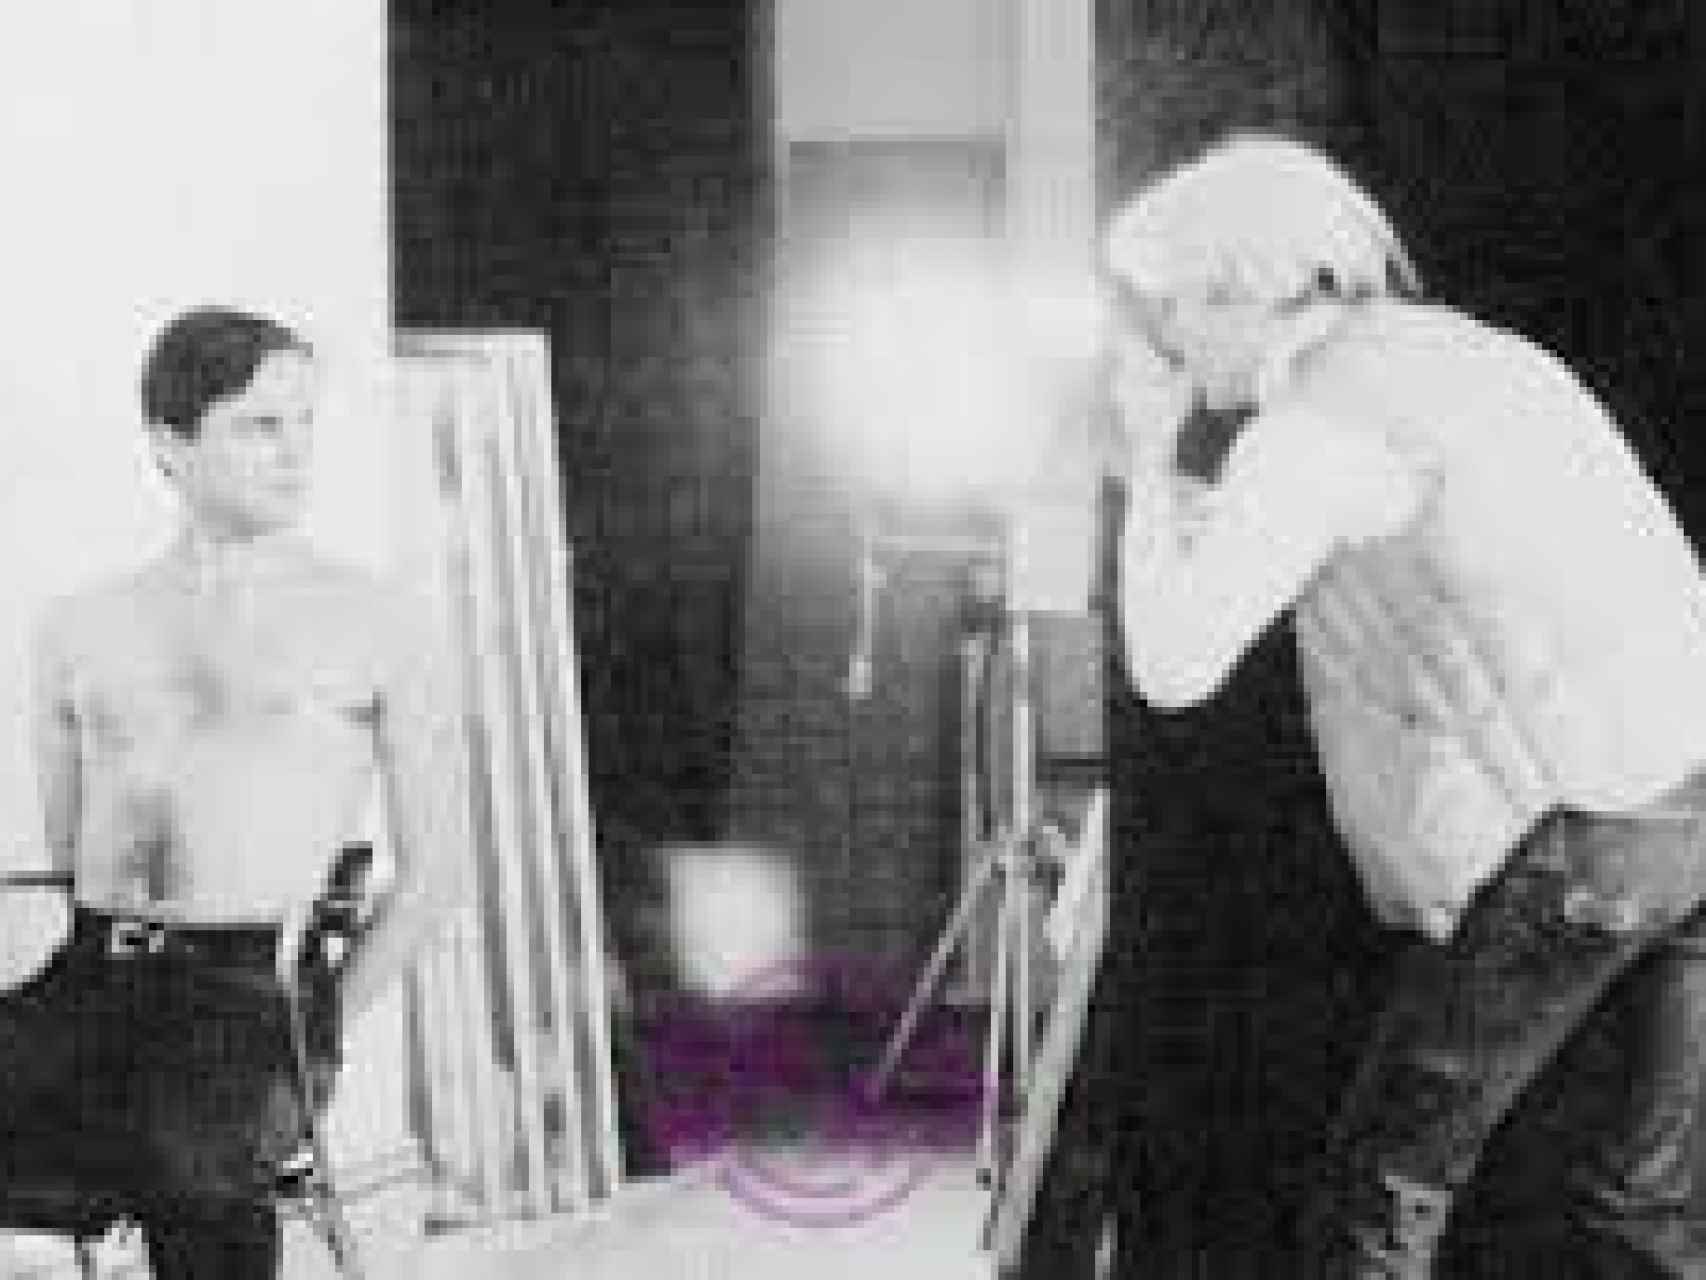 Bosé en una sesión fotográfica con Warhol